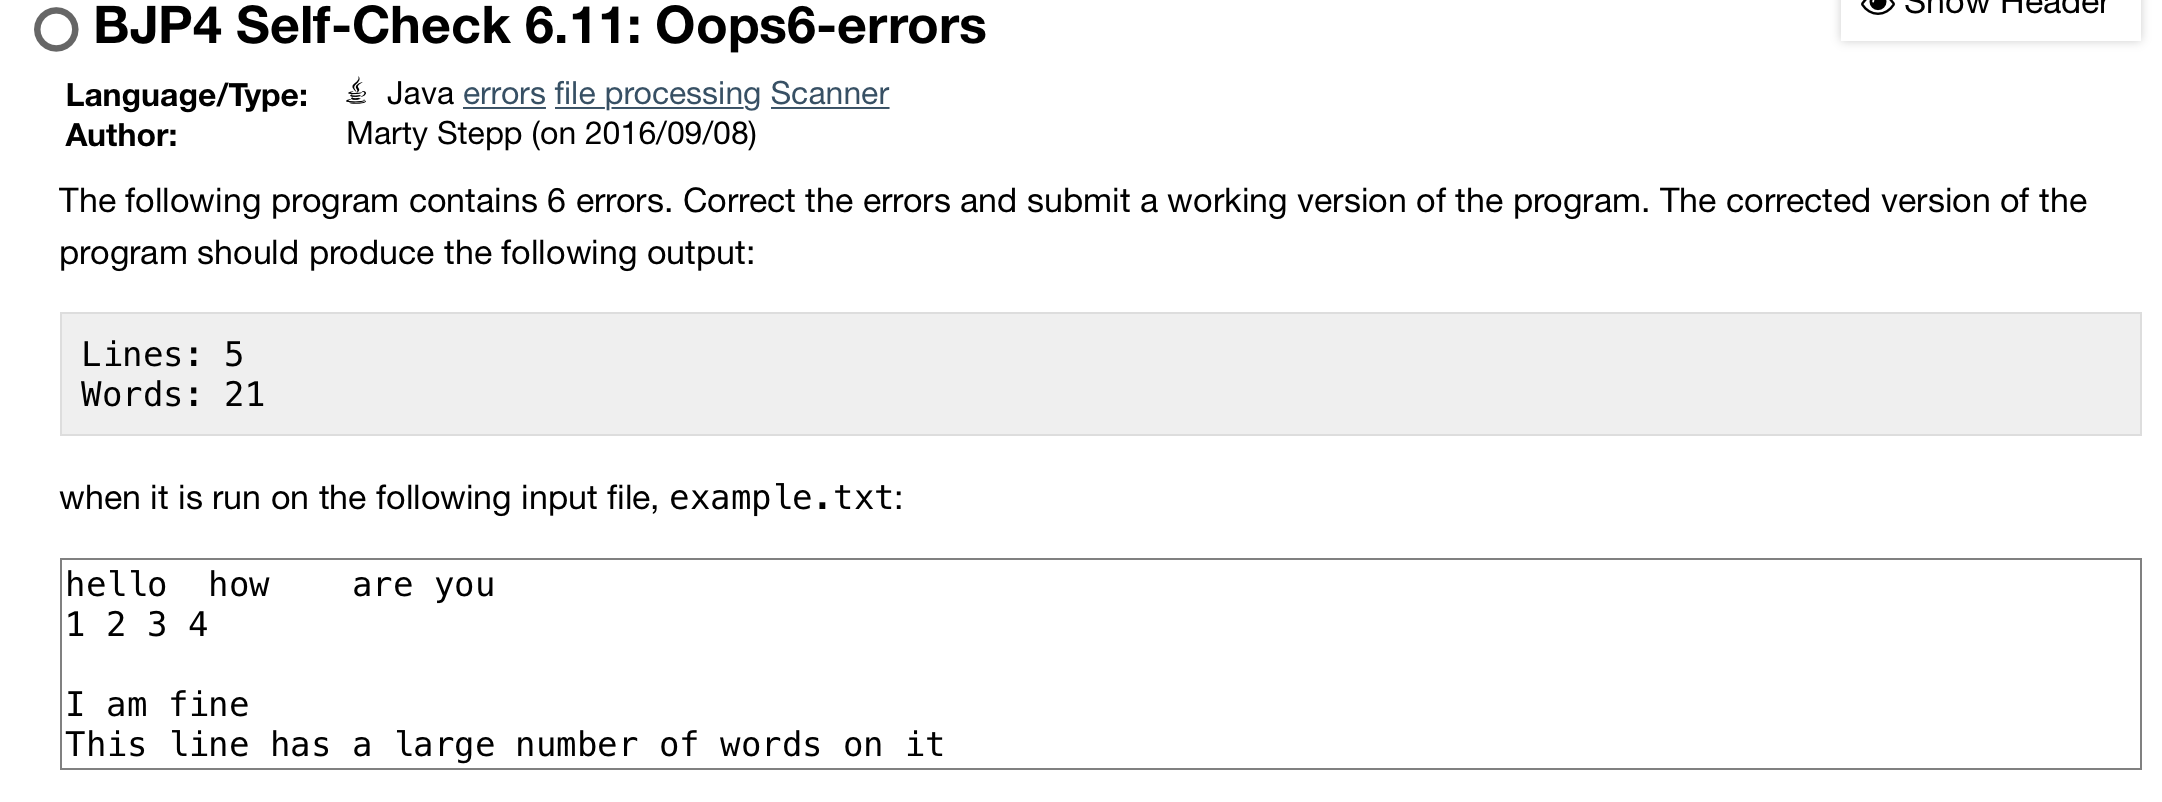 Solved medder OBJP4 Self-Check 6.11: Oops6-errors